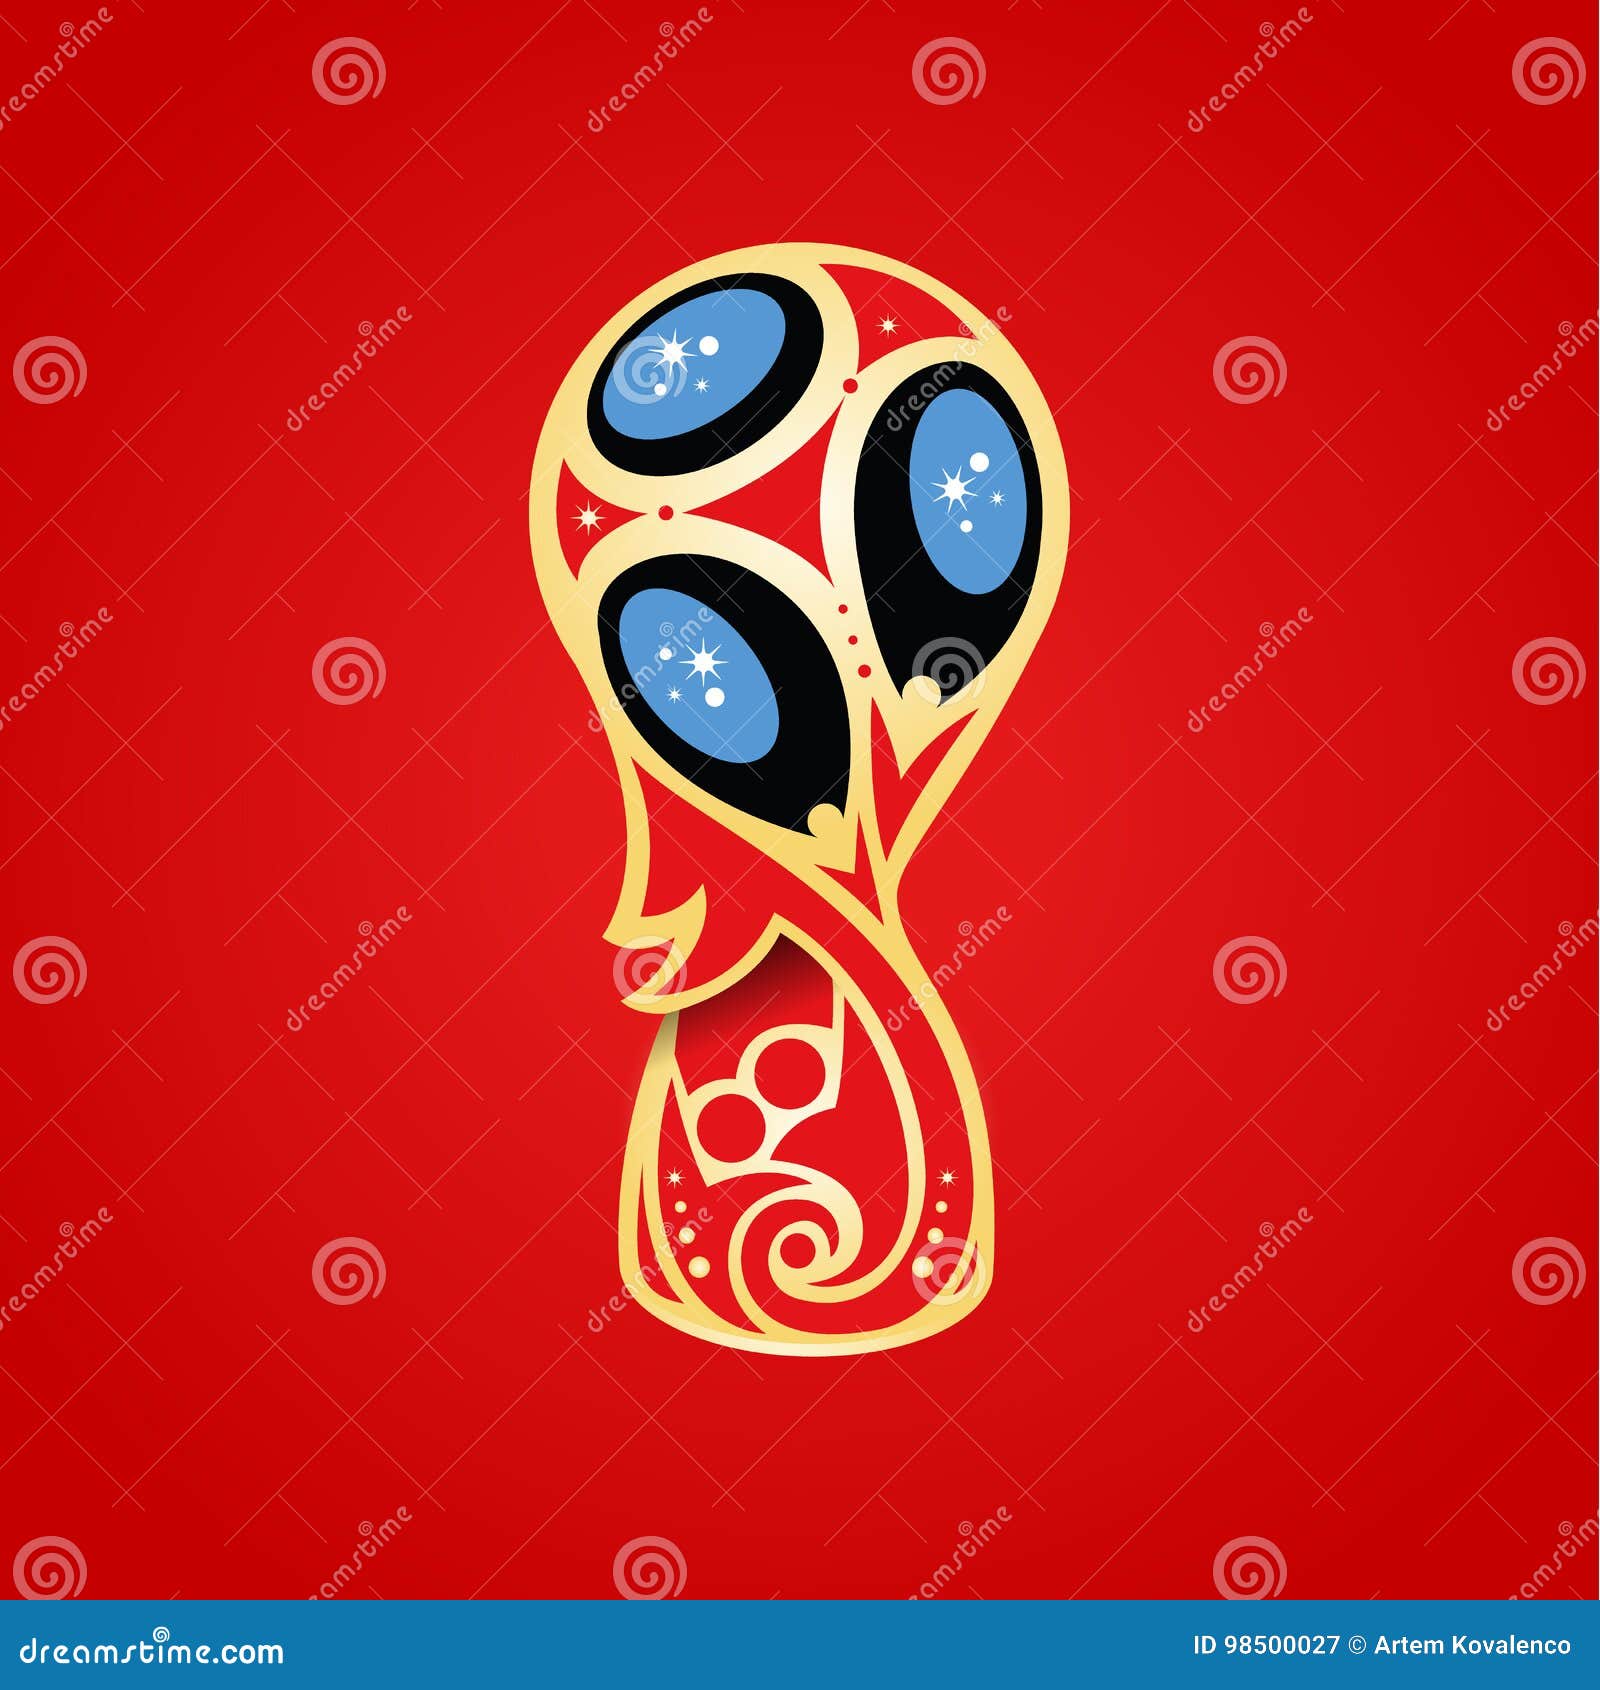 επίσης corel σύρετε το διάνυσμα απεικόνισης Πρωταθλήματα 2018 ποδοσφαίρου λογότυπο για το πρωτάθλημα θερινού ποδοσφαίρου Φλυτζάνι των συνομοσπονδιών 2017 στο ποδόσφαιρο Παγκόσμιο Κύπελλο ποδοσφαίρου στη Ρωσία 2018